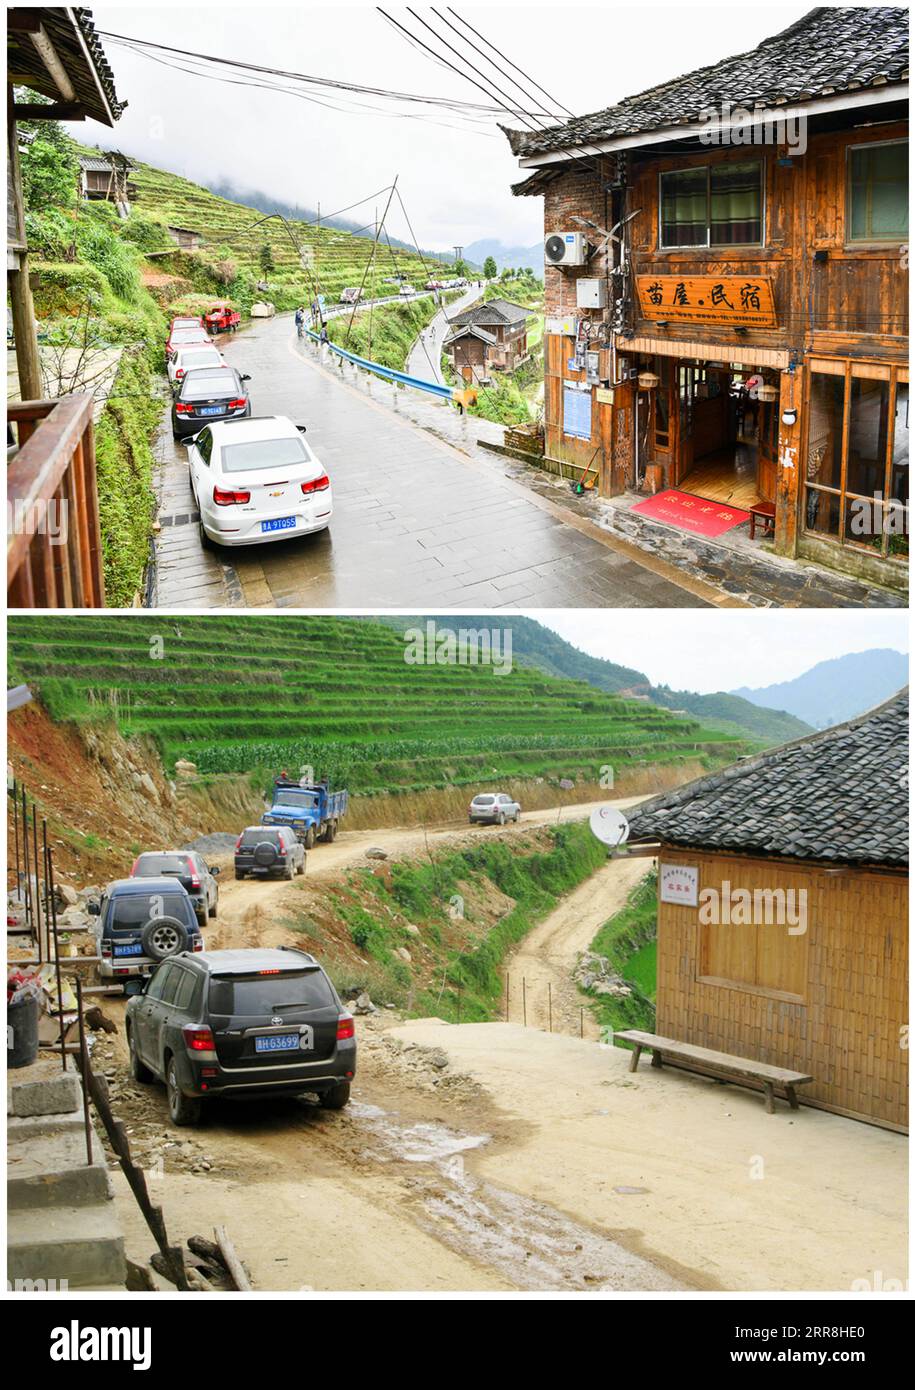 210509 -- GUIYANG, 9. Mai 2021 -- auf diesem Kombi-Foto parken Touristen ihre Autos entlang der neu asphaltierten Straße in Jiabang Terrassenfelder im Congjiang County, südwestchinesische Provinz Guizhou, 4. Mai 2021 oben, Foto aufgenommen von , und Touristen fahren Autos auf einer unbefestigten Straße in Jiabang Terrassenfeldern im Jahr 2011 Foto von Mo Xiaoshu. Hartnäckiges nasses Wetter bedeckt die Terrassen an den meisten Morgen mit einer Decke aus Wolken und Nebel. Die traumhafte Landschaft ist das, was Sie sich vorstellen können und auf Bildern, die von Mo Xiaoshu aufgenommen wurden. MO, ein 39-jähriger Beamter, hat mehr als 100.000 Fotos von Jiaba gemacht Stockfoto